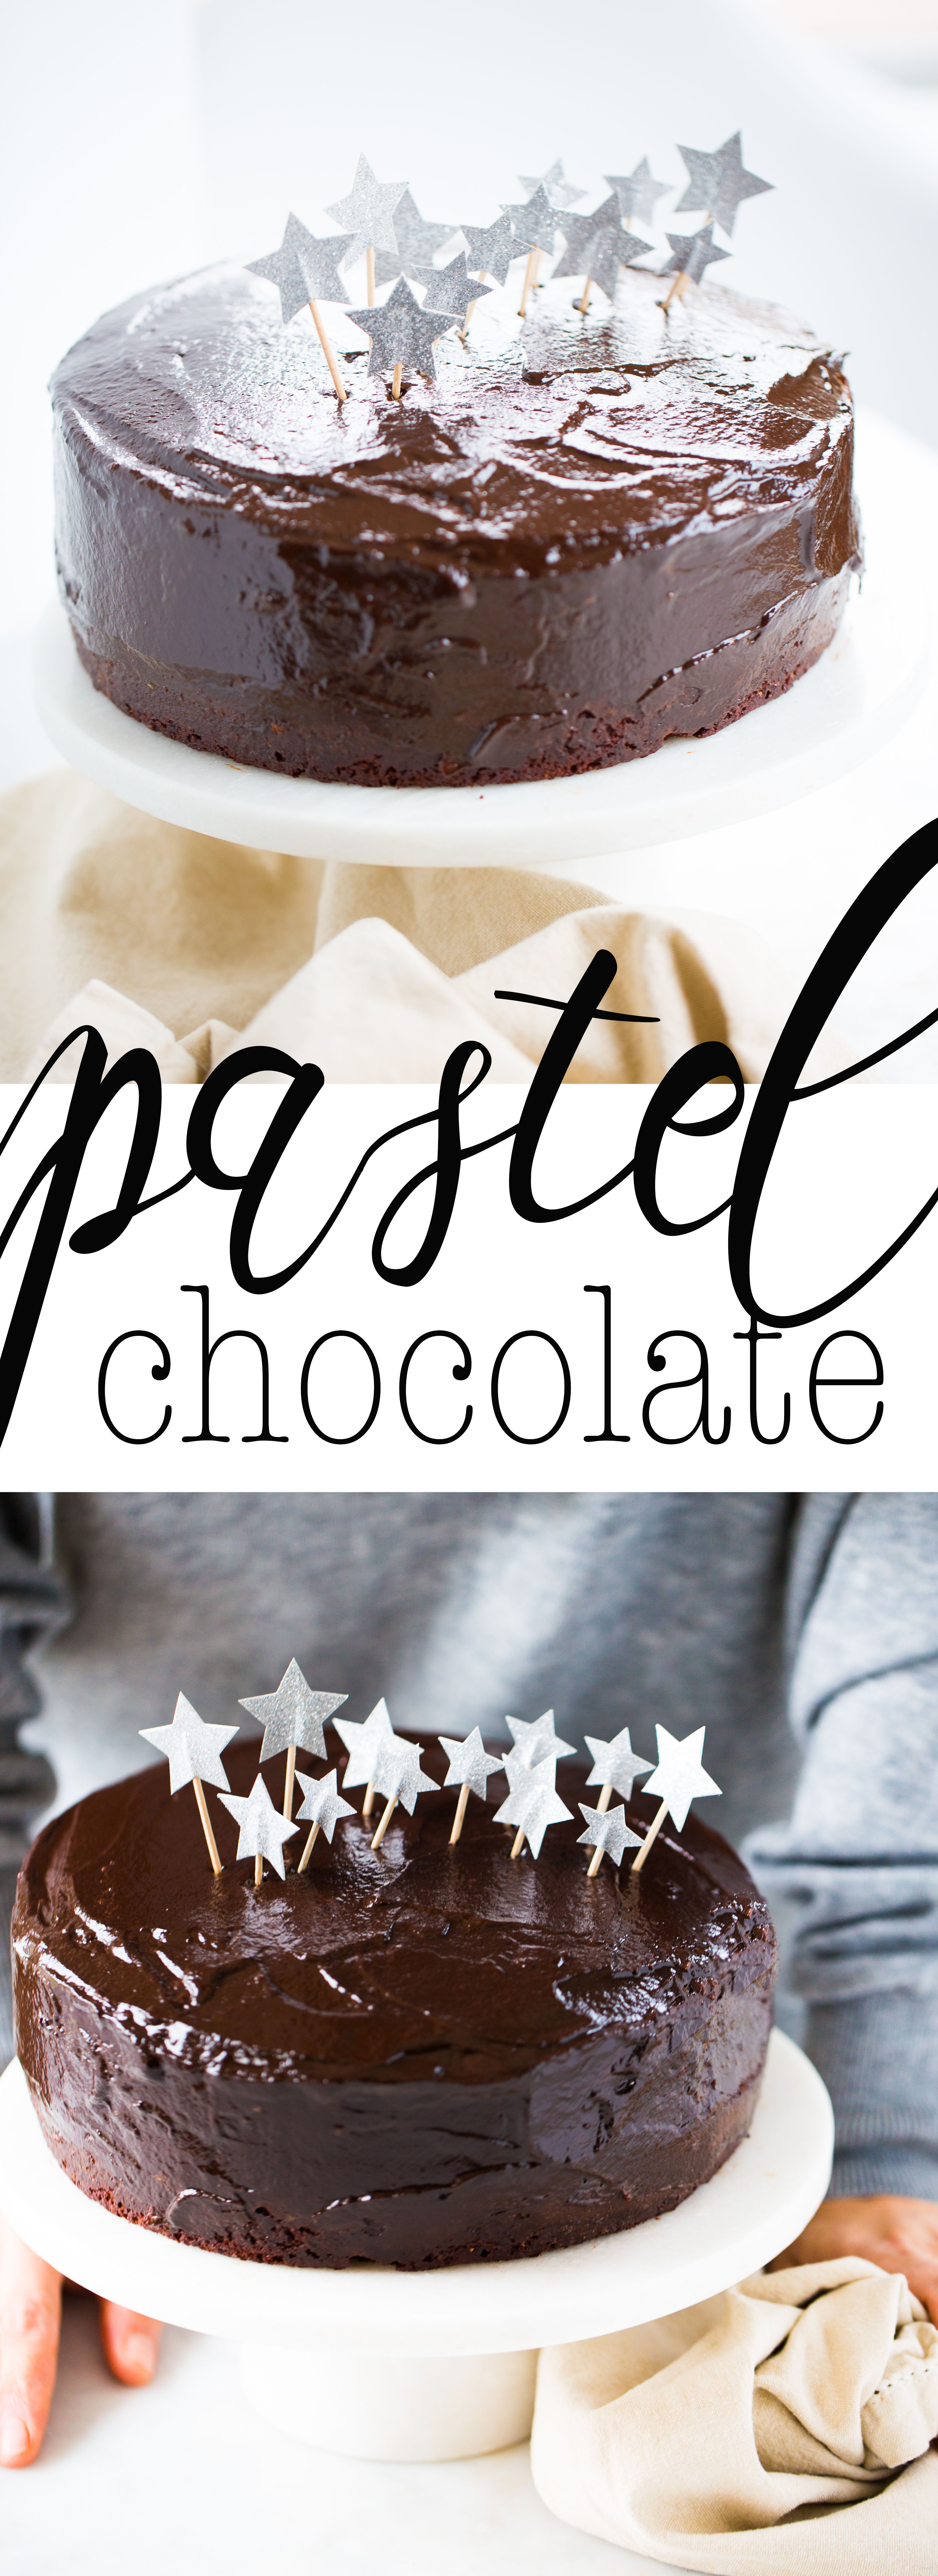 Receta De Pastel De Chocolate Vegano Para Celebrar Un Buen Cumpleaños Copy Piloncilloandvainilla 8108